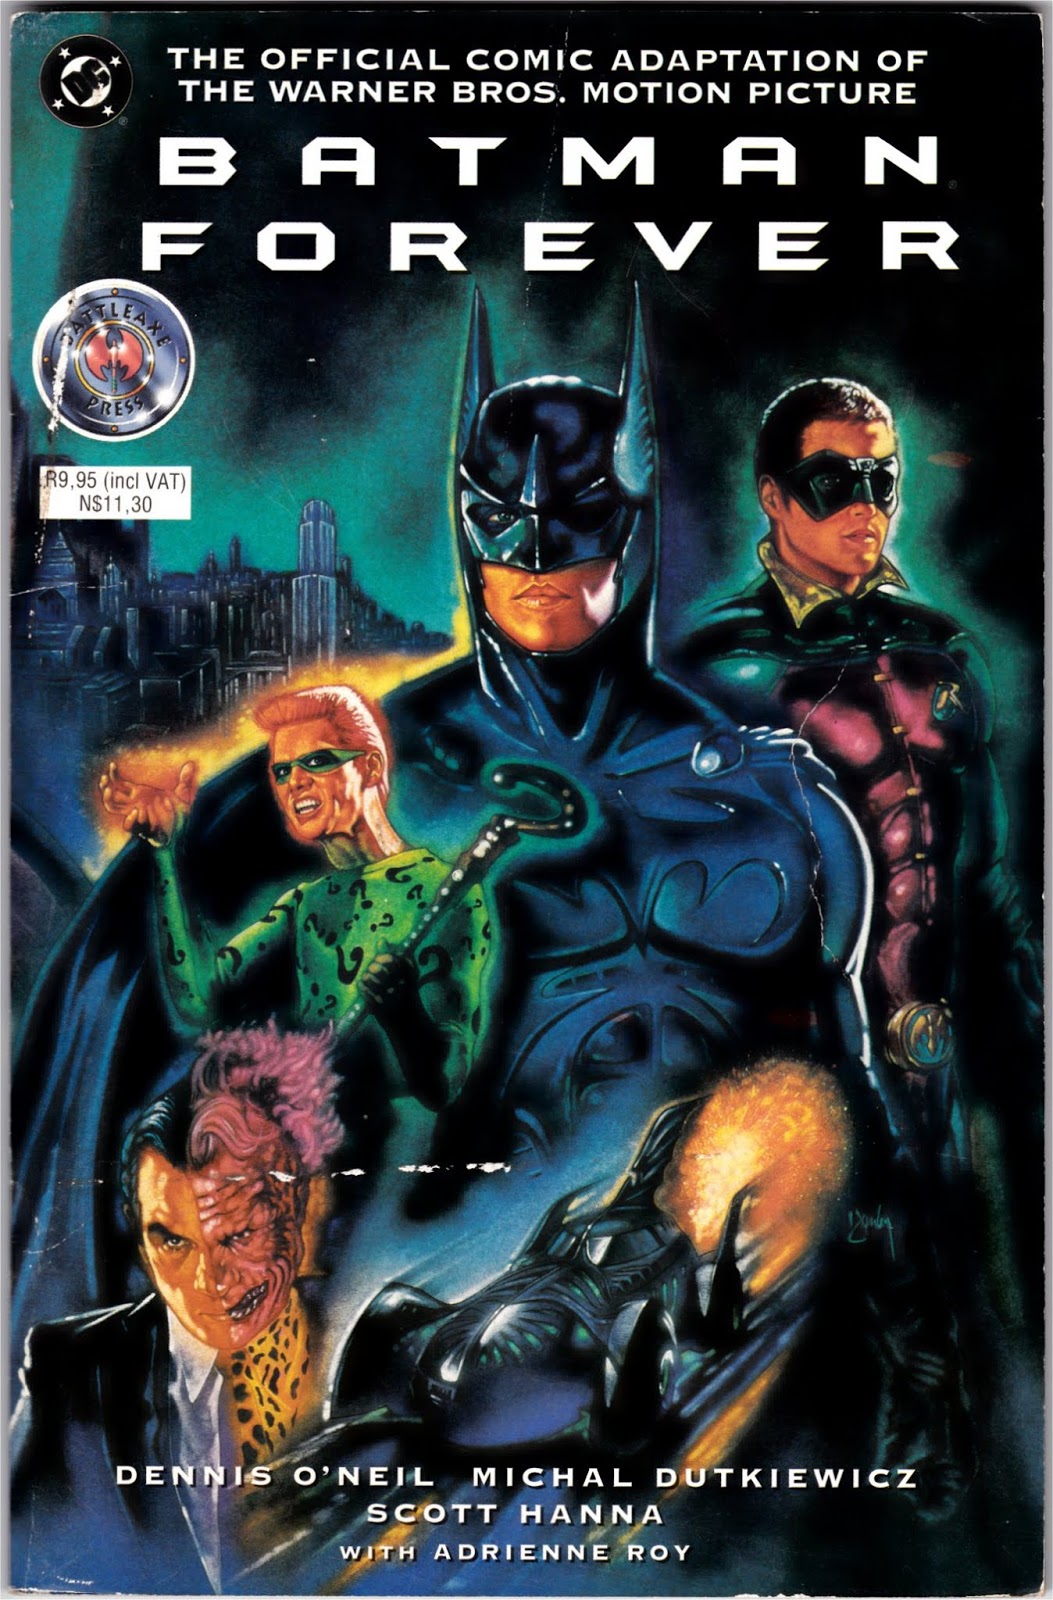 South African Comic Books: Battleaxe Press Batman Forever Adaptation